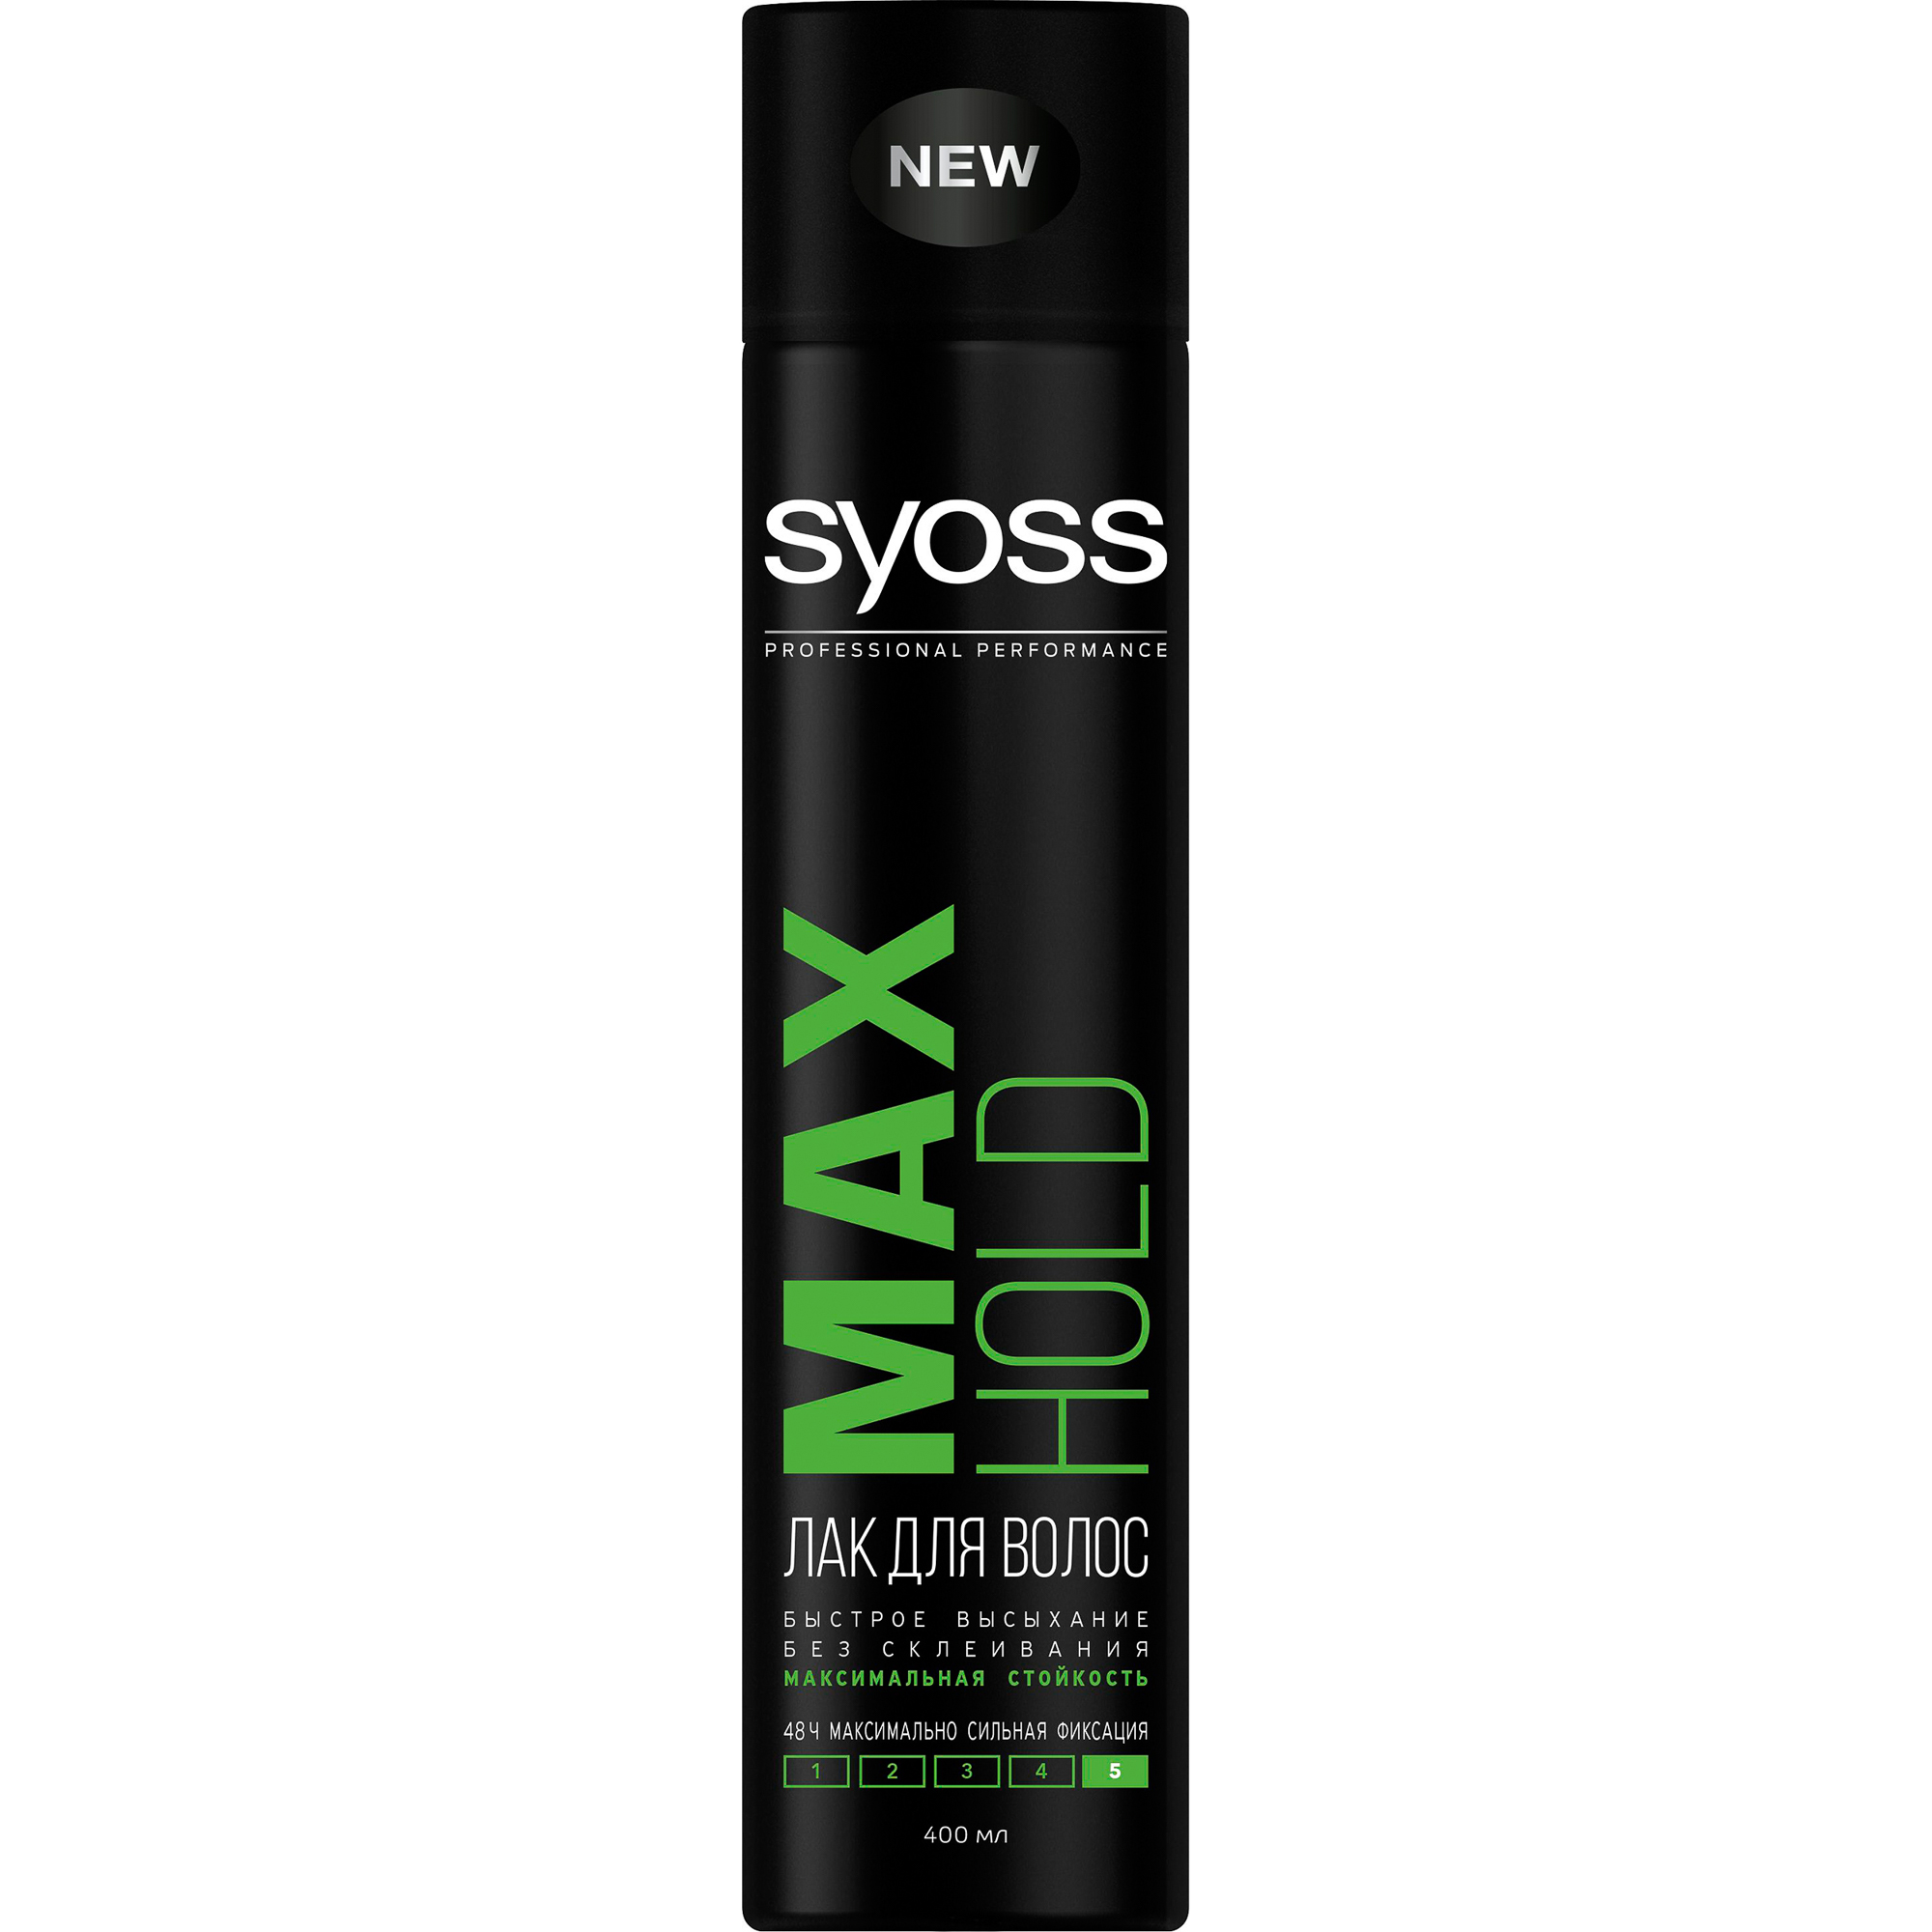 Лак для волос Syoss Max Hold Максимально сильная фиксация 400 мл syoss лак для волос max hold экстрасильная фиксация 400 г 400 мл